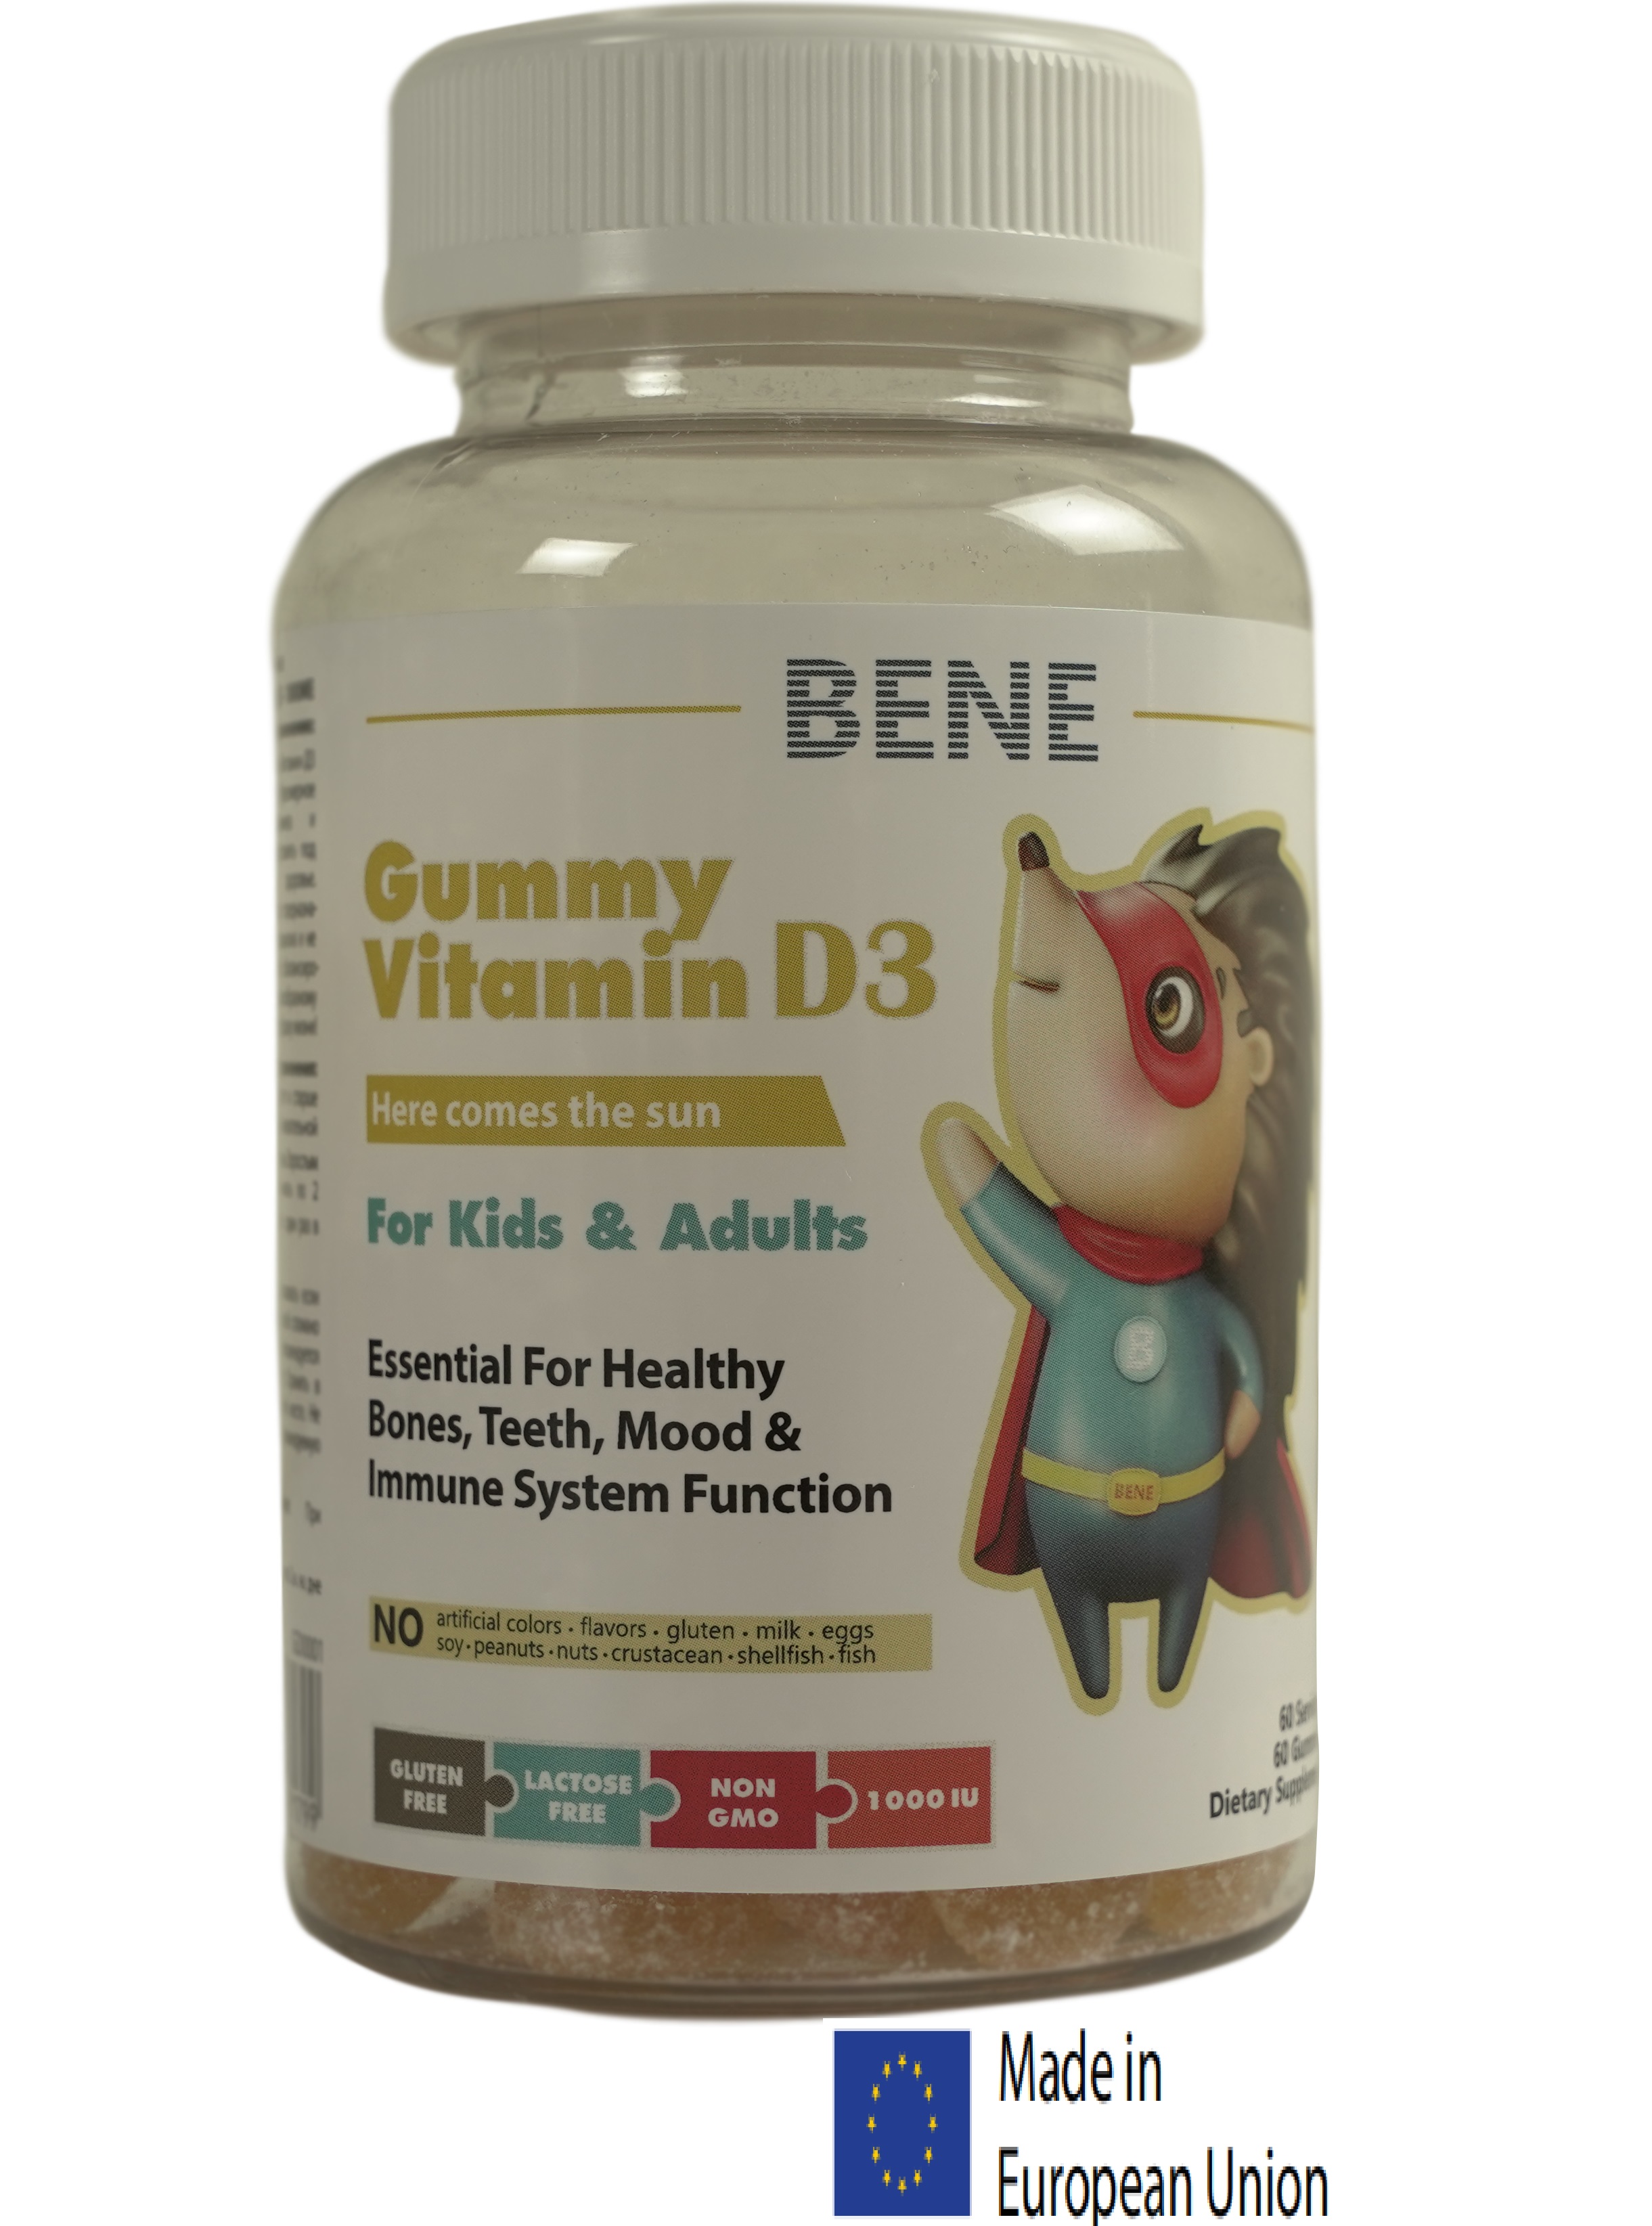 ბენე ვიტამინი დ3 კანფეტი / BENE kids Gummy Vitamin D3